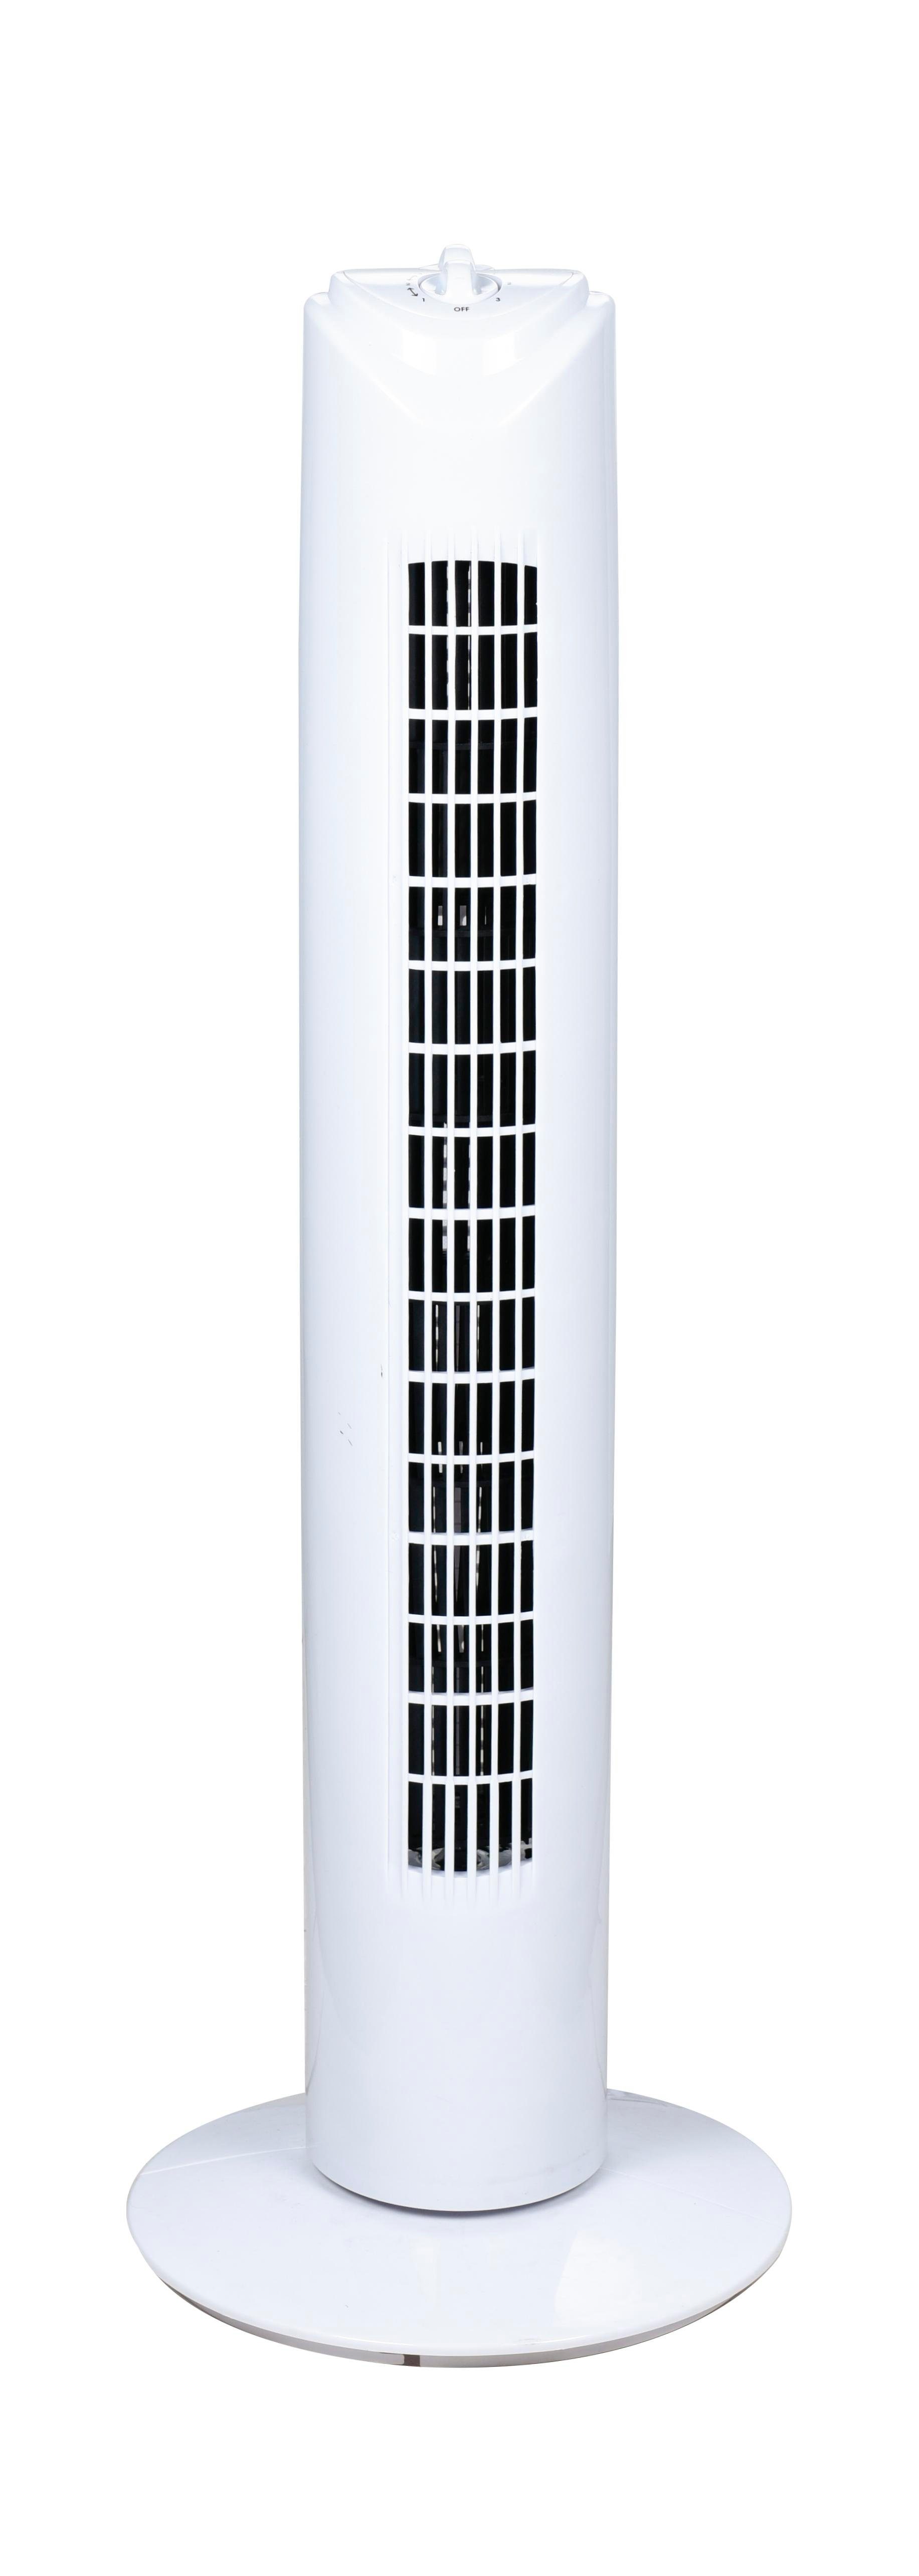 SALCO Turmventilator KLT-1082 Geschwindigkeitsstufen, 3 weiß, Timer, 2 oszillierend, geräuscharm Stunden